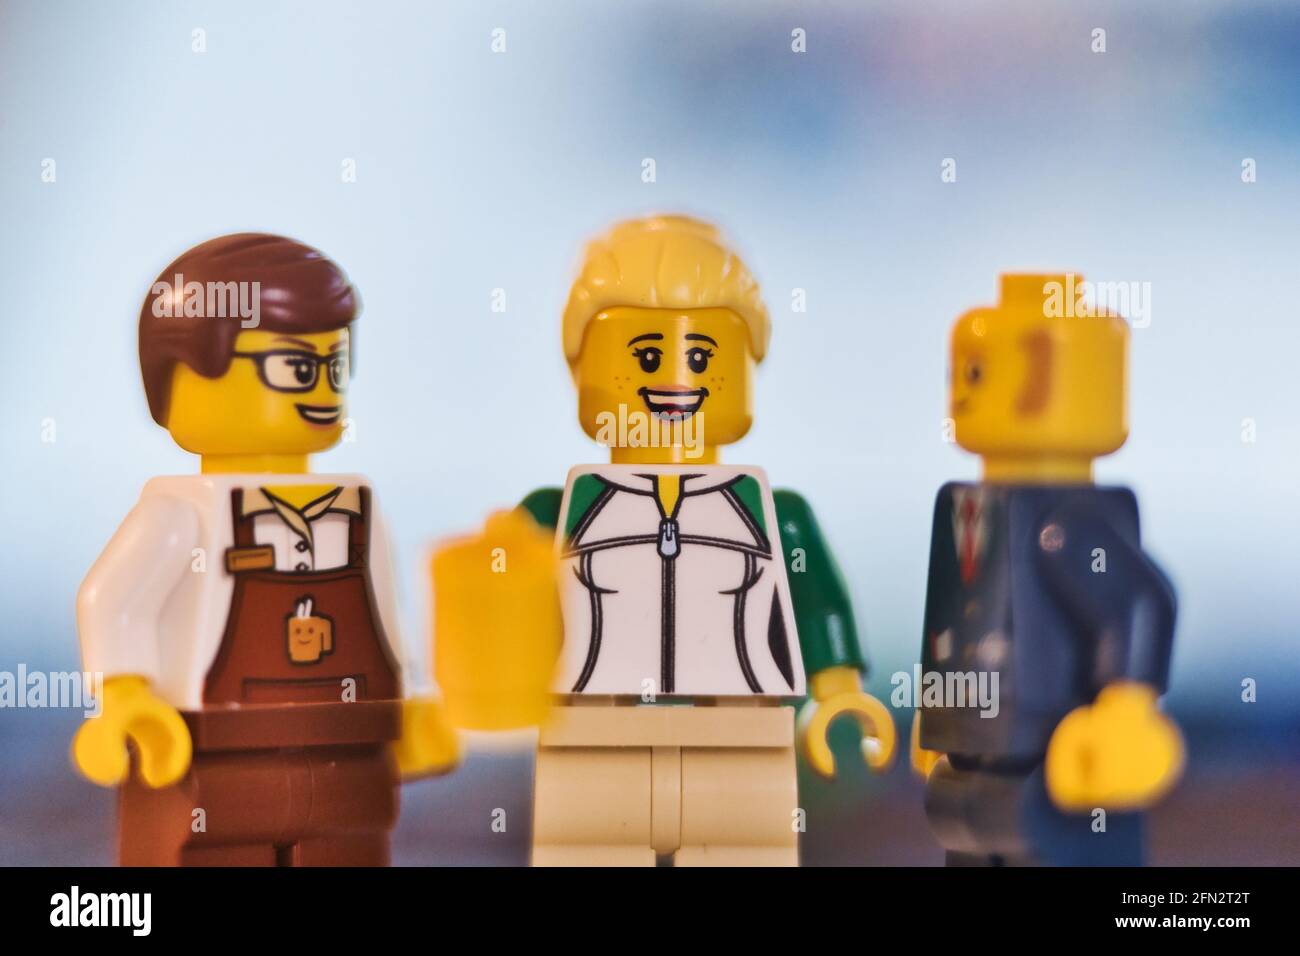 MÜNCHEN, 13. Mai 2021: LEGO-Figuren von Büromitarbeitern stehen zusammen.  Geschäftstreffen am Morgen mit frischem Kaffee Stockfotografie - Alamy